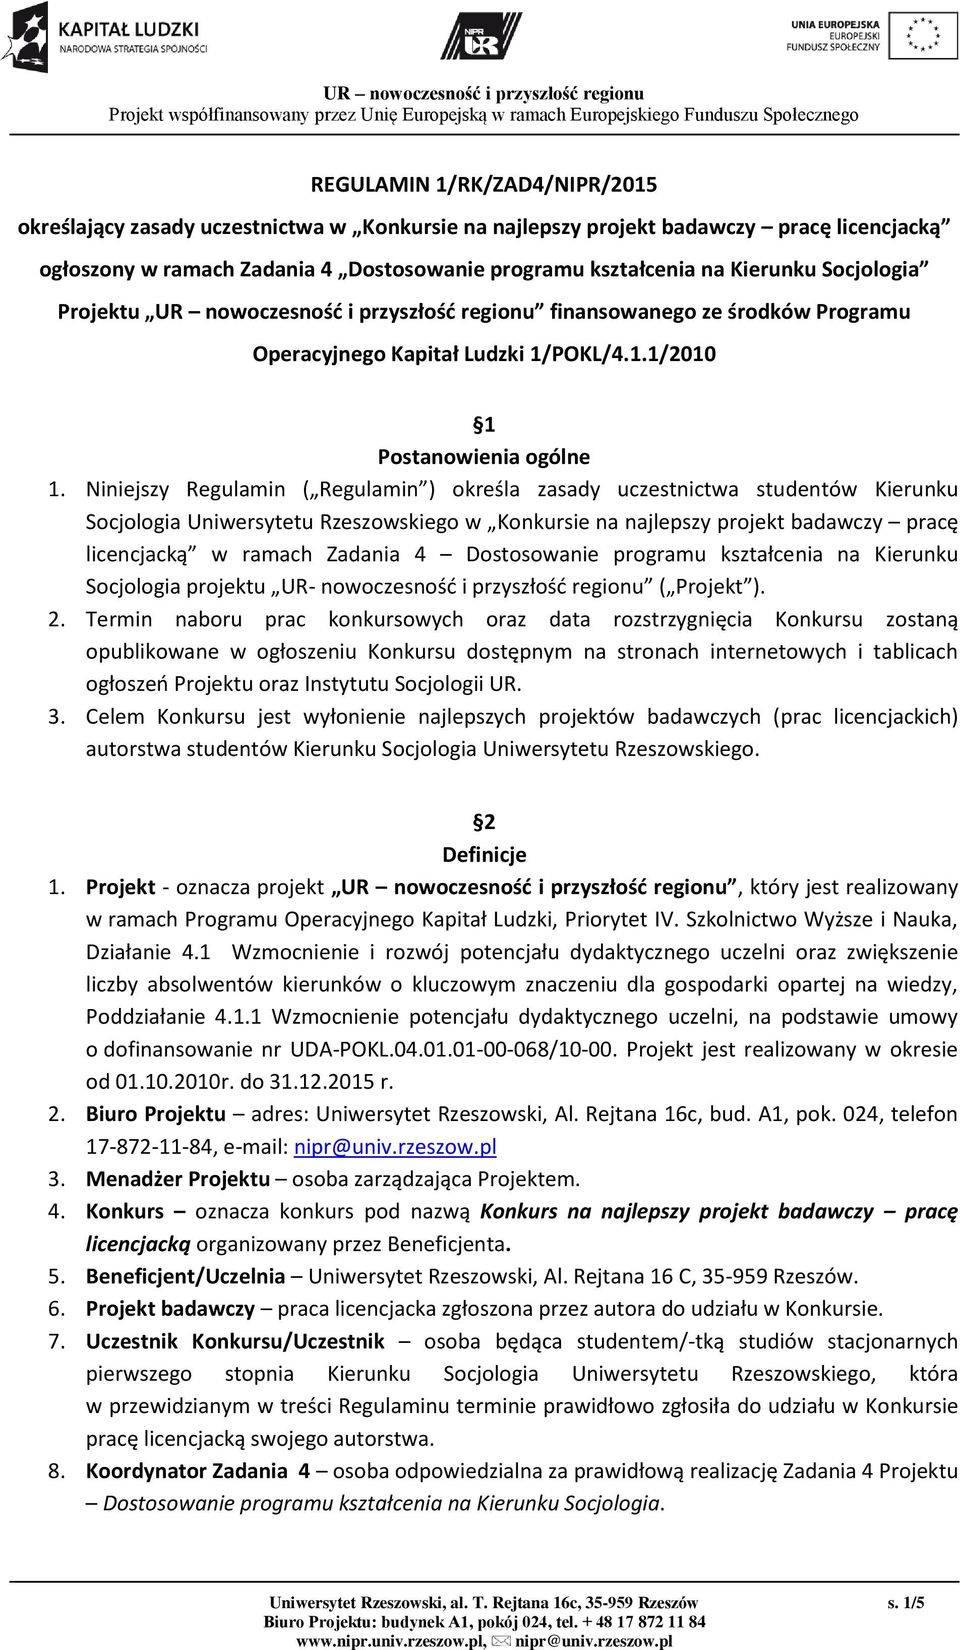 Niniejszy Regulamin ( Regulamin ) określa zasady uczestnictwa studentów Kierunku Socjologia Uniwersytetu Rzeszowskiego w Konkursie na najlepszy projekt badawczy pracę licencjacką w ramach Zadania 4